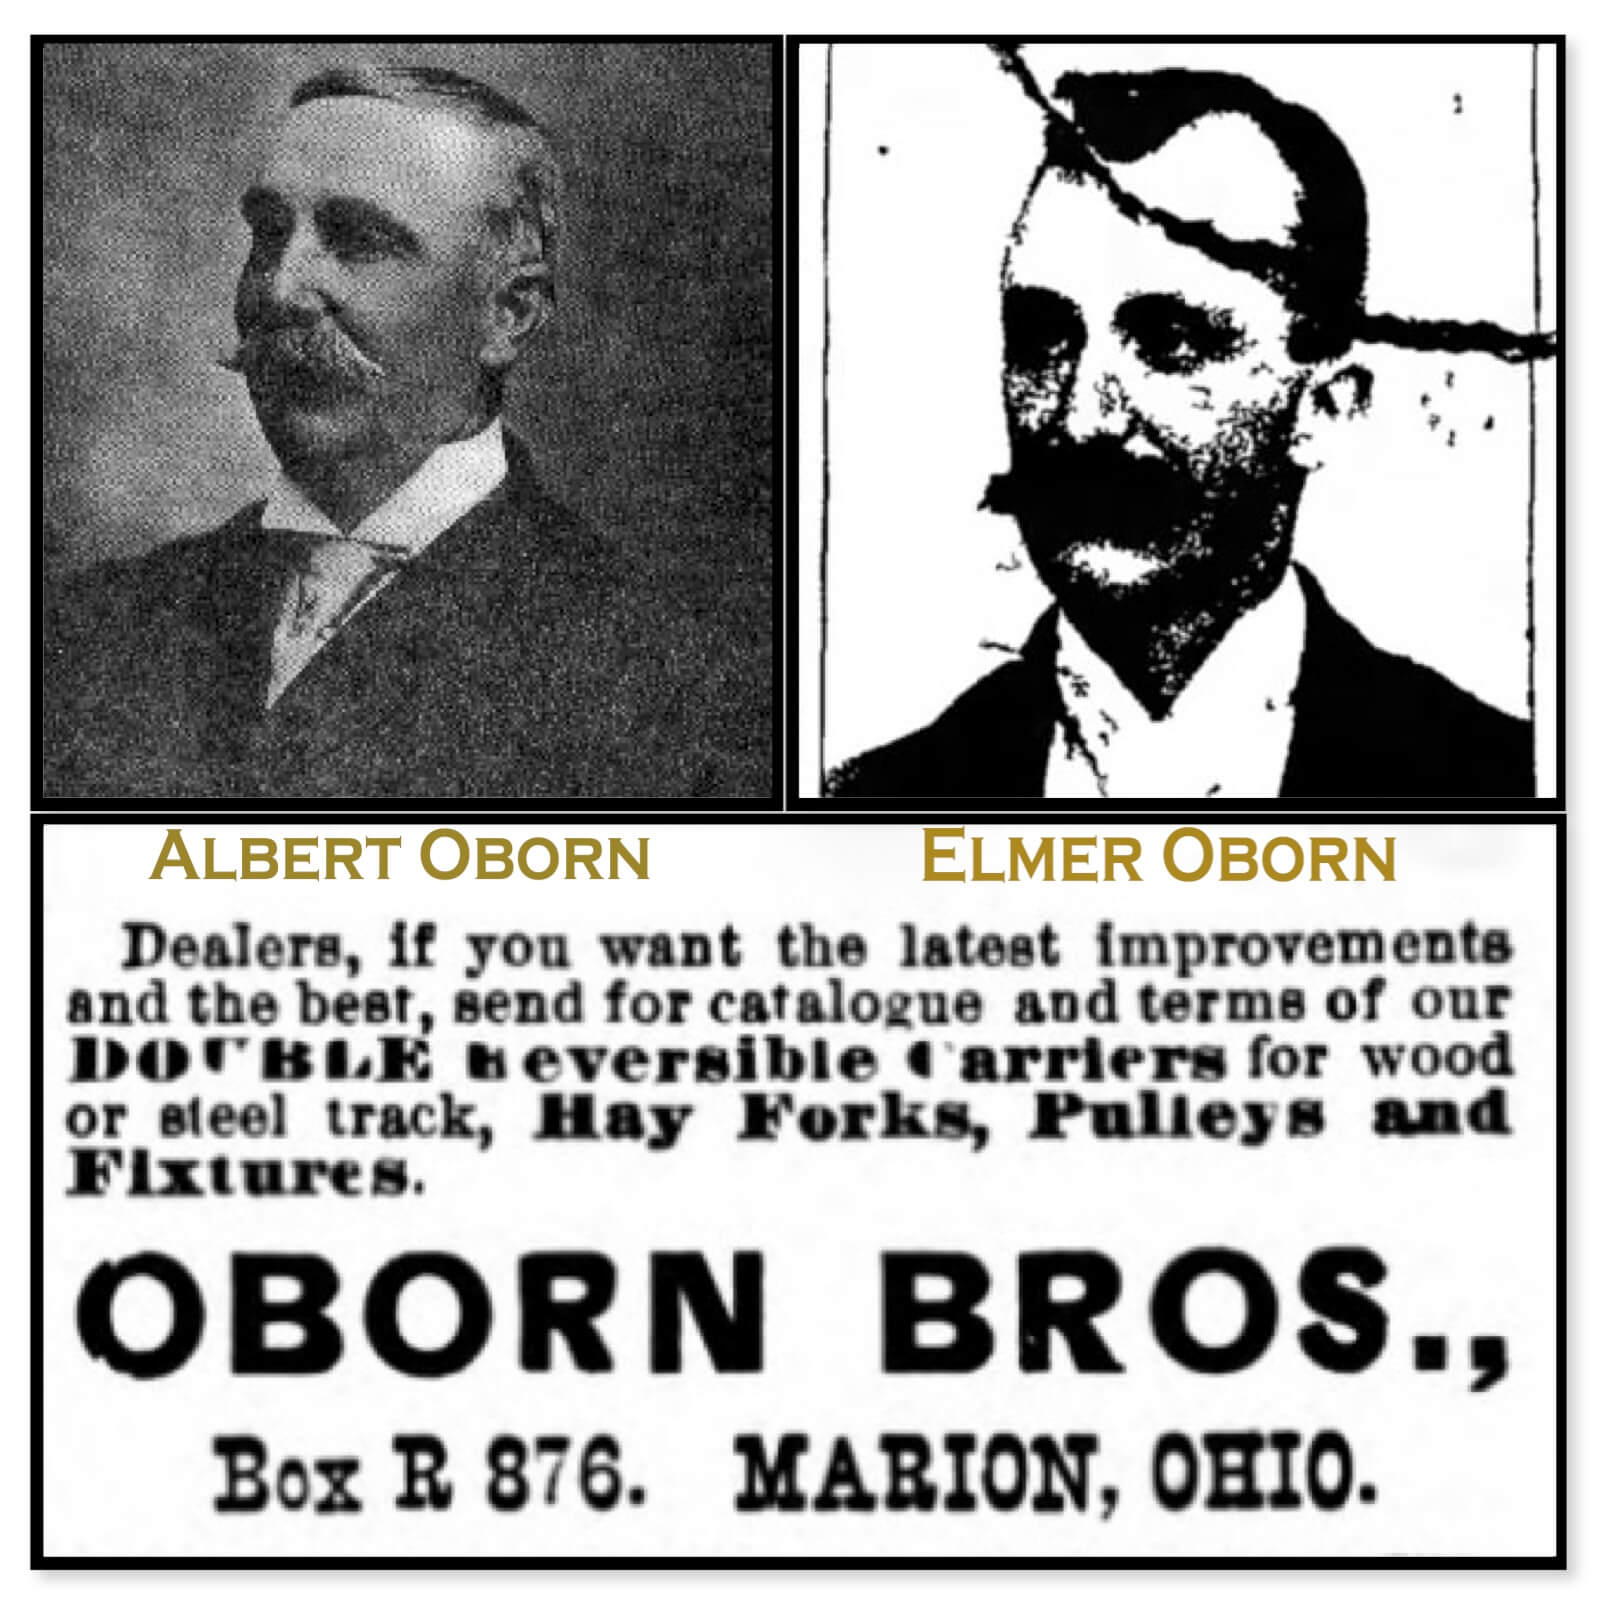 Oborn Bros.